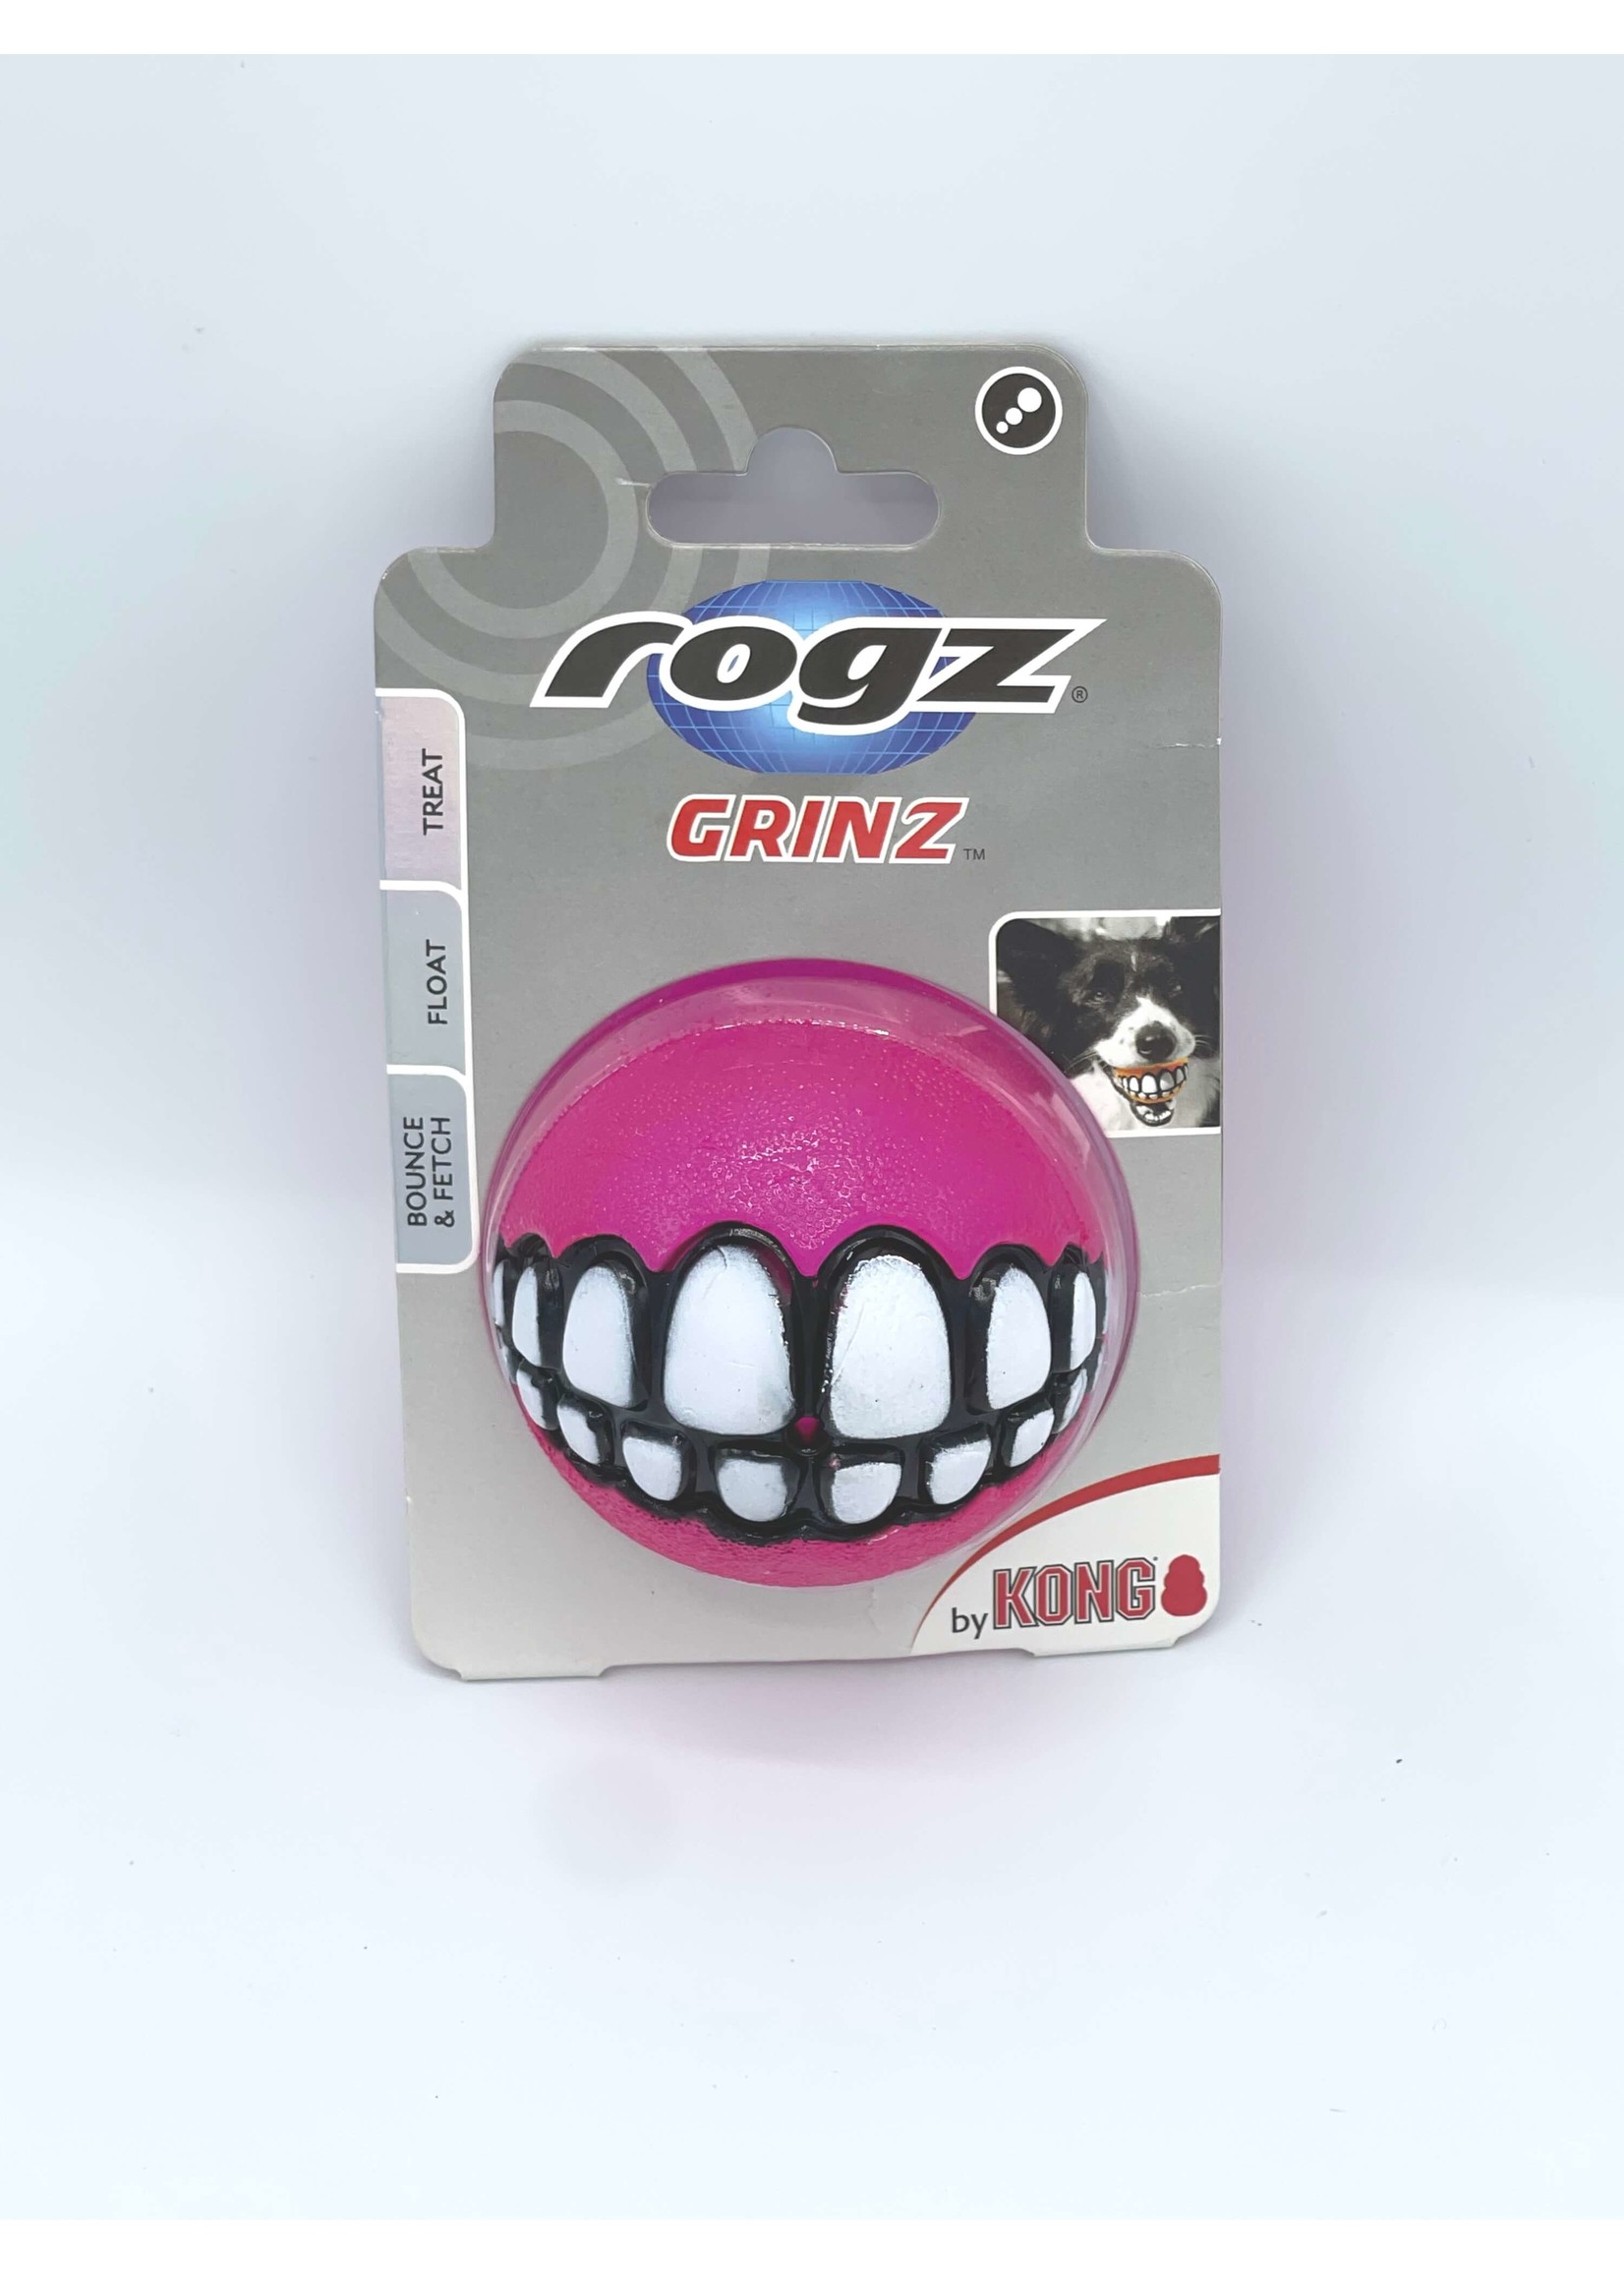 ROGZ Grinz Treat Ball Dog Toy